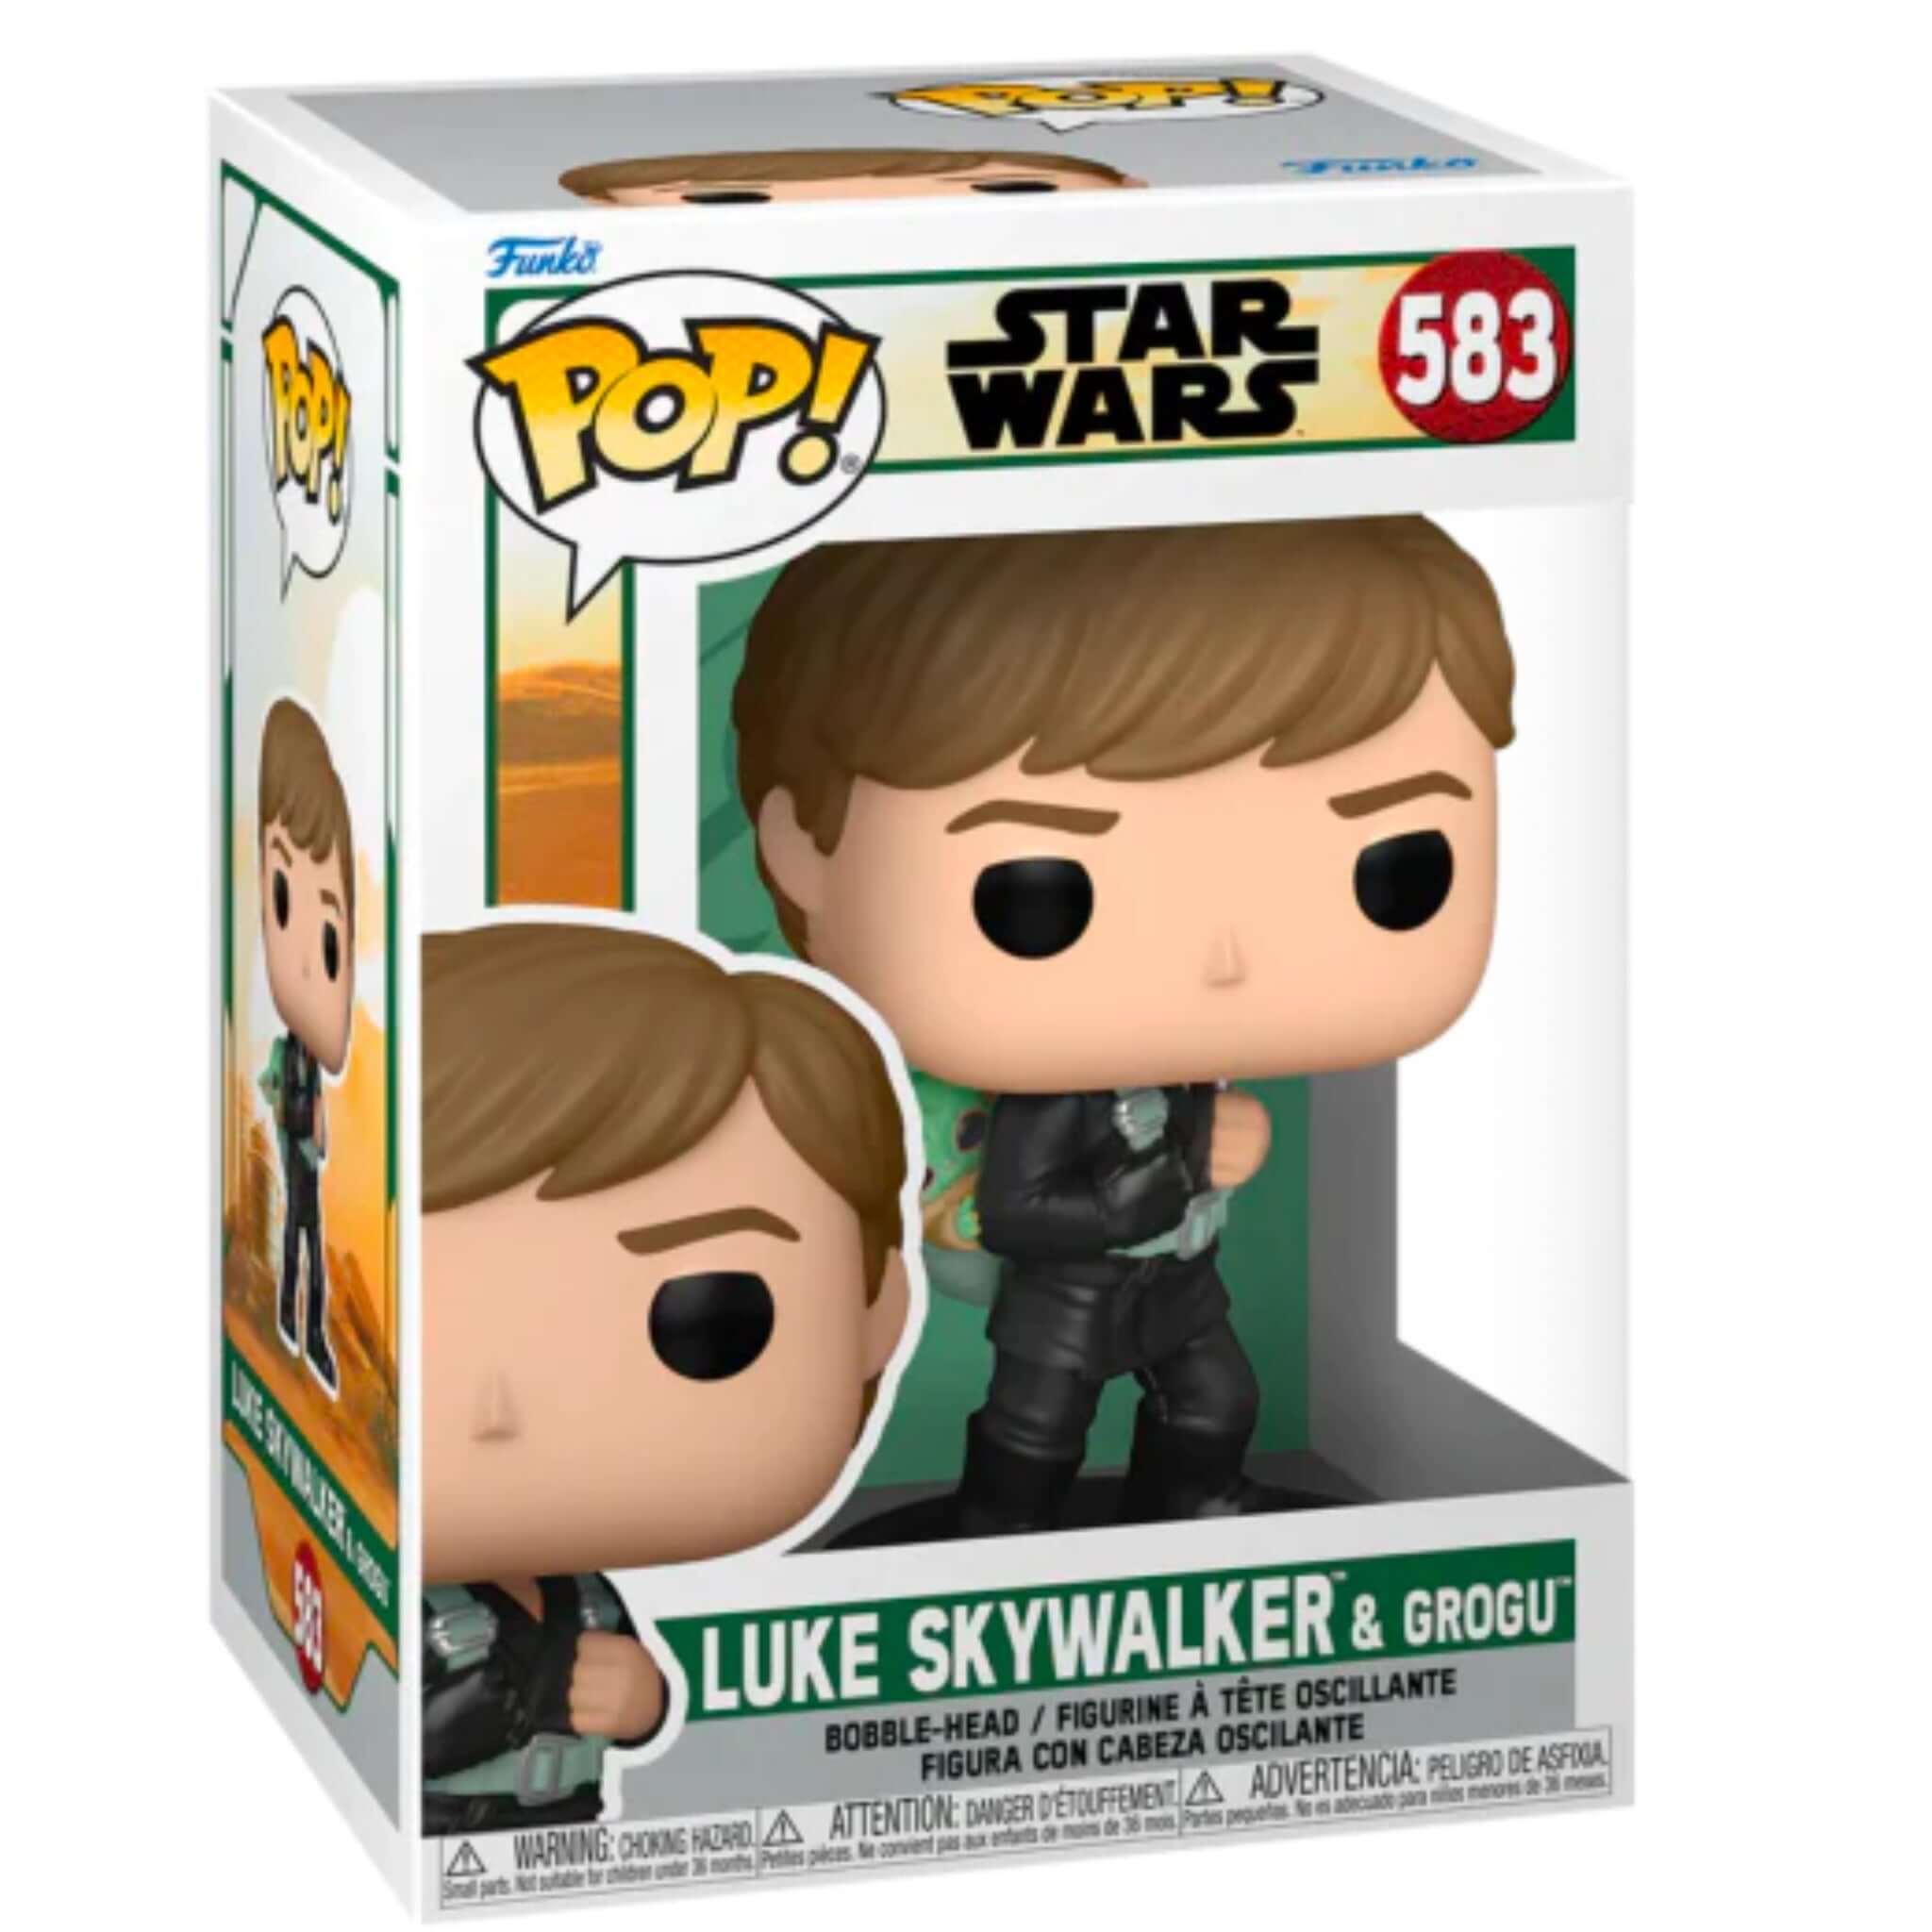 Luke Skywalker & Grogu Funko Pop!-Jingle Truck Toys